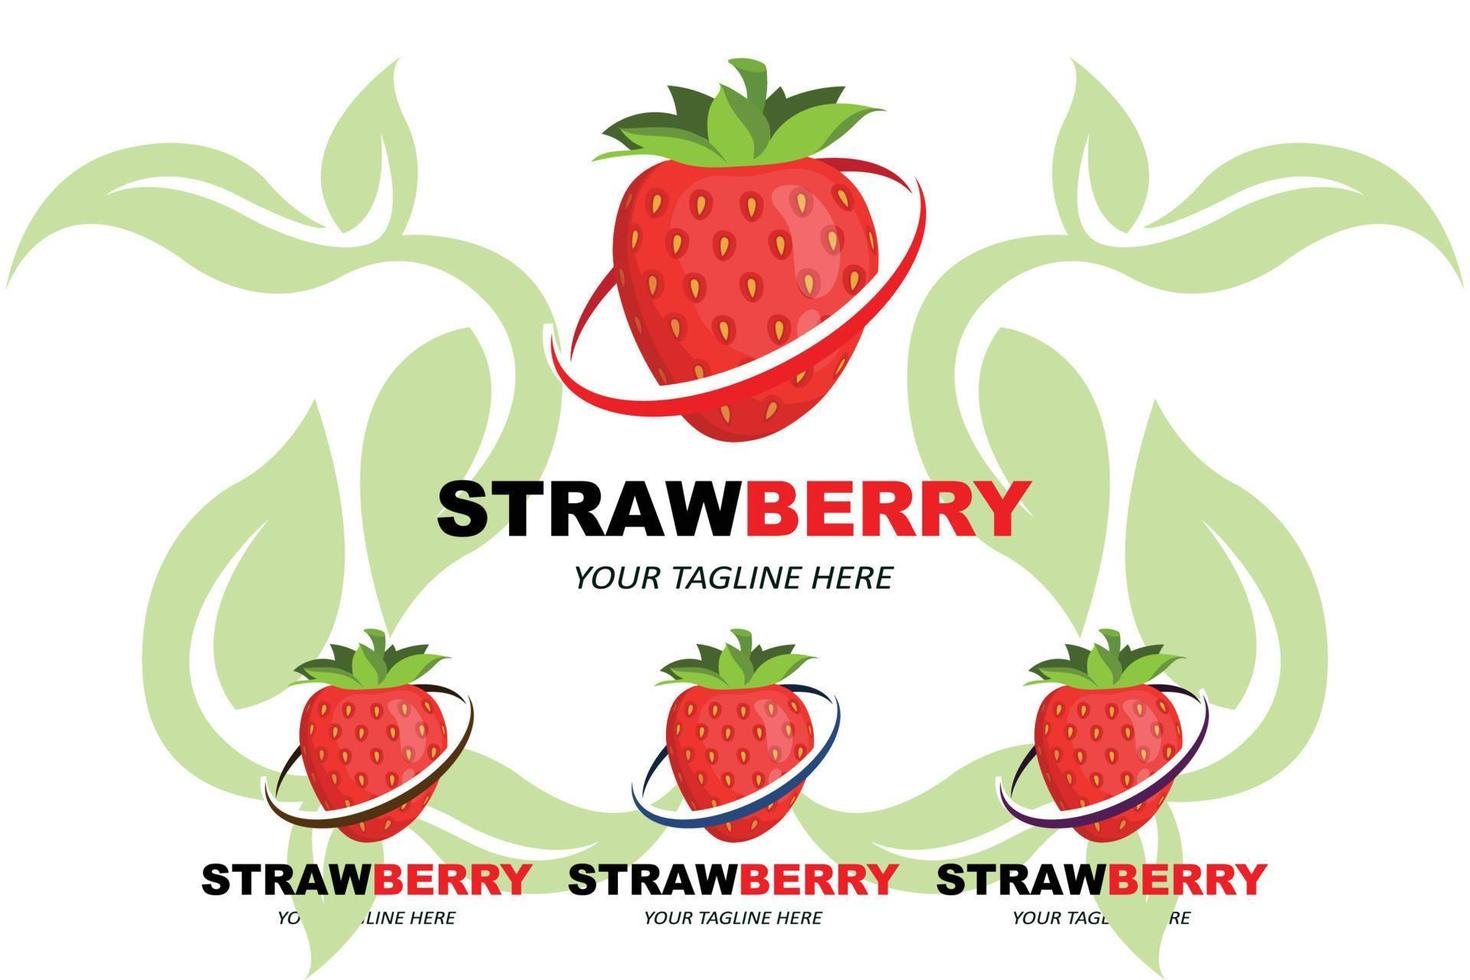 vetor de um logotipo de frutas morango frutas frescas cor vermelha, disponível no mercado pode ser para suco de frutas ou para gostos de saúde do corpo azedo, design de impressão de tela, adesivo, banner, empresa de frutas